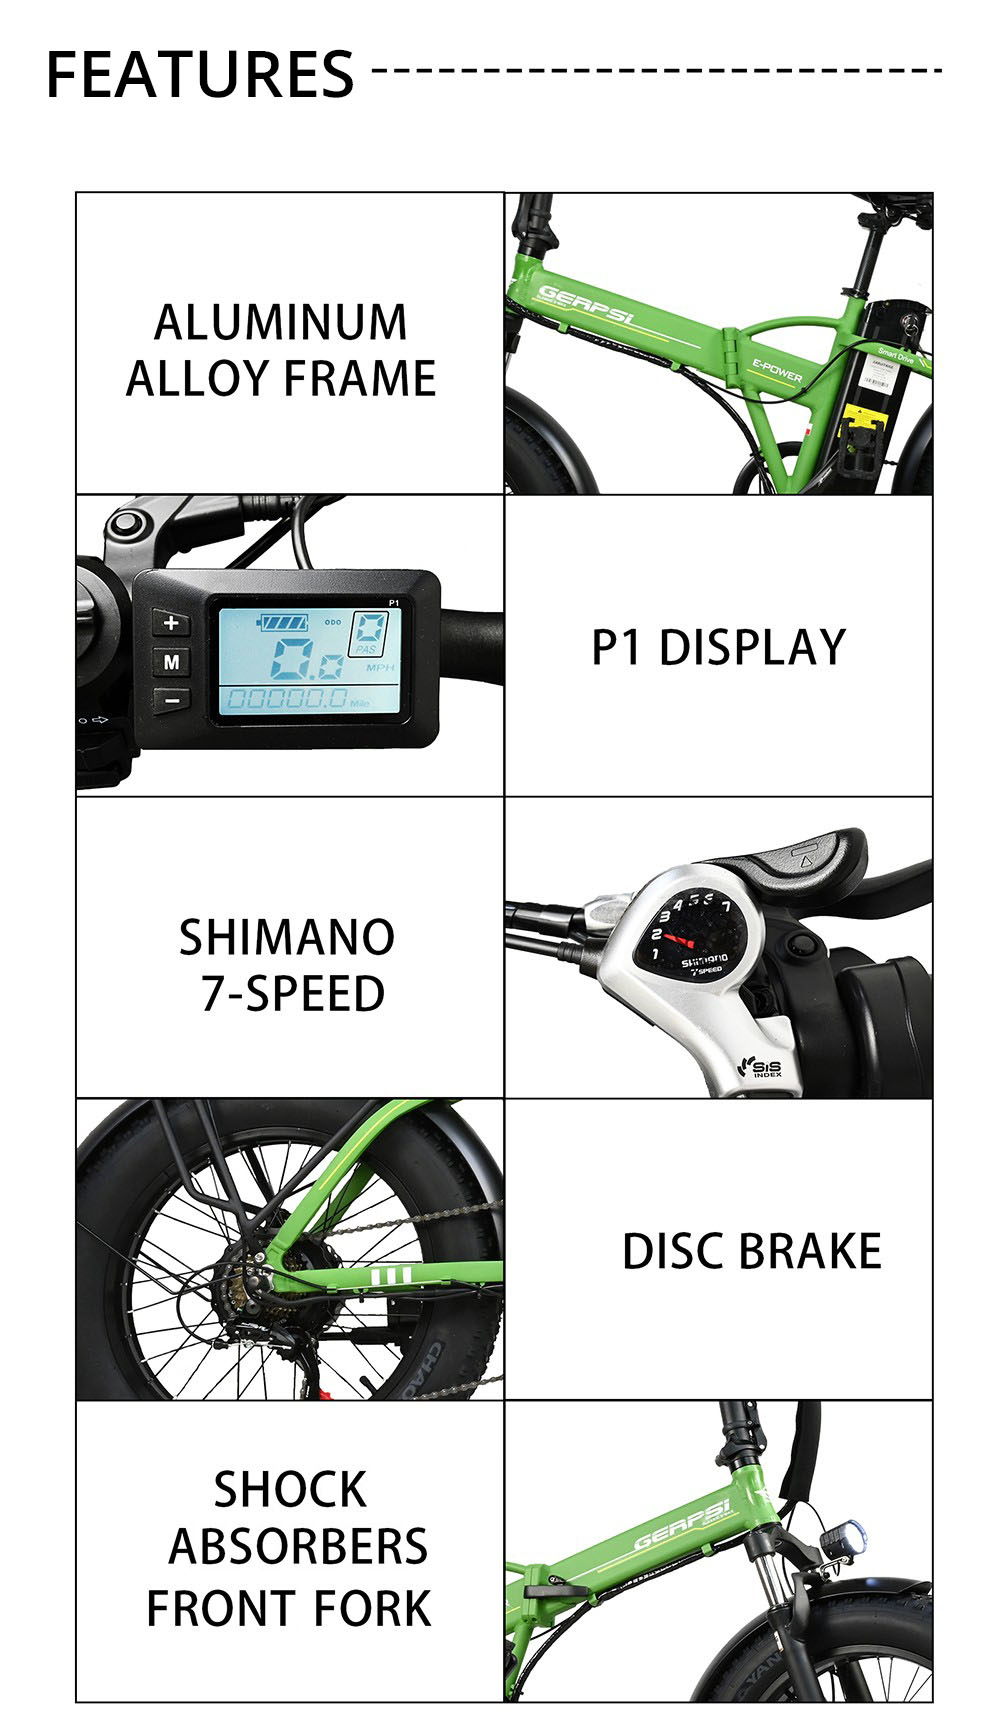 BAOLUJIE DZ2001 Składany rower elektryczny, akumulator 48 V 12 Ah, silnik 500 W, opony 20 * 4.0 cala, maksymalna prędkość 45 km/h, zasięg 30-40 km, hamulec tarczowy - zielony